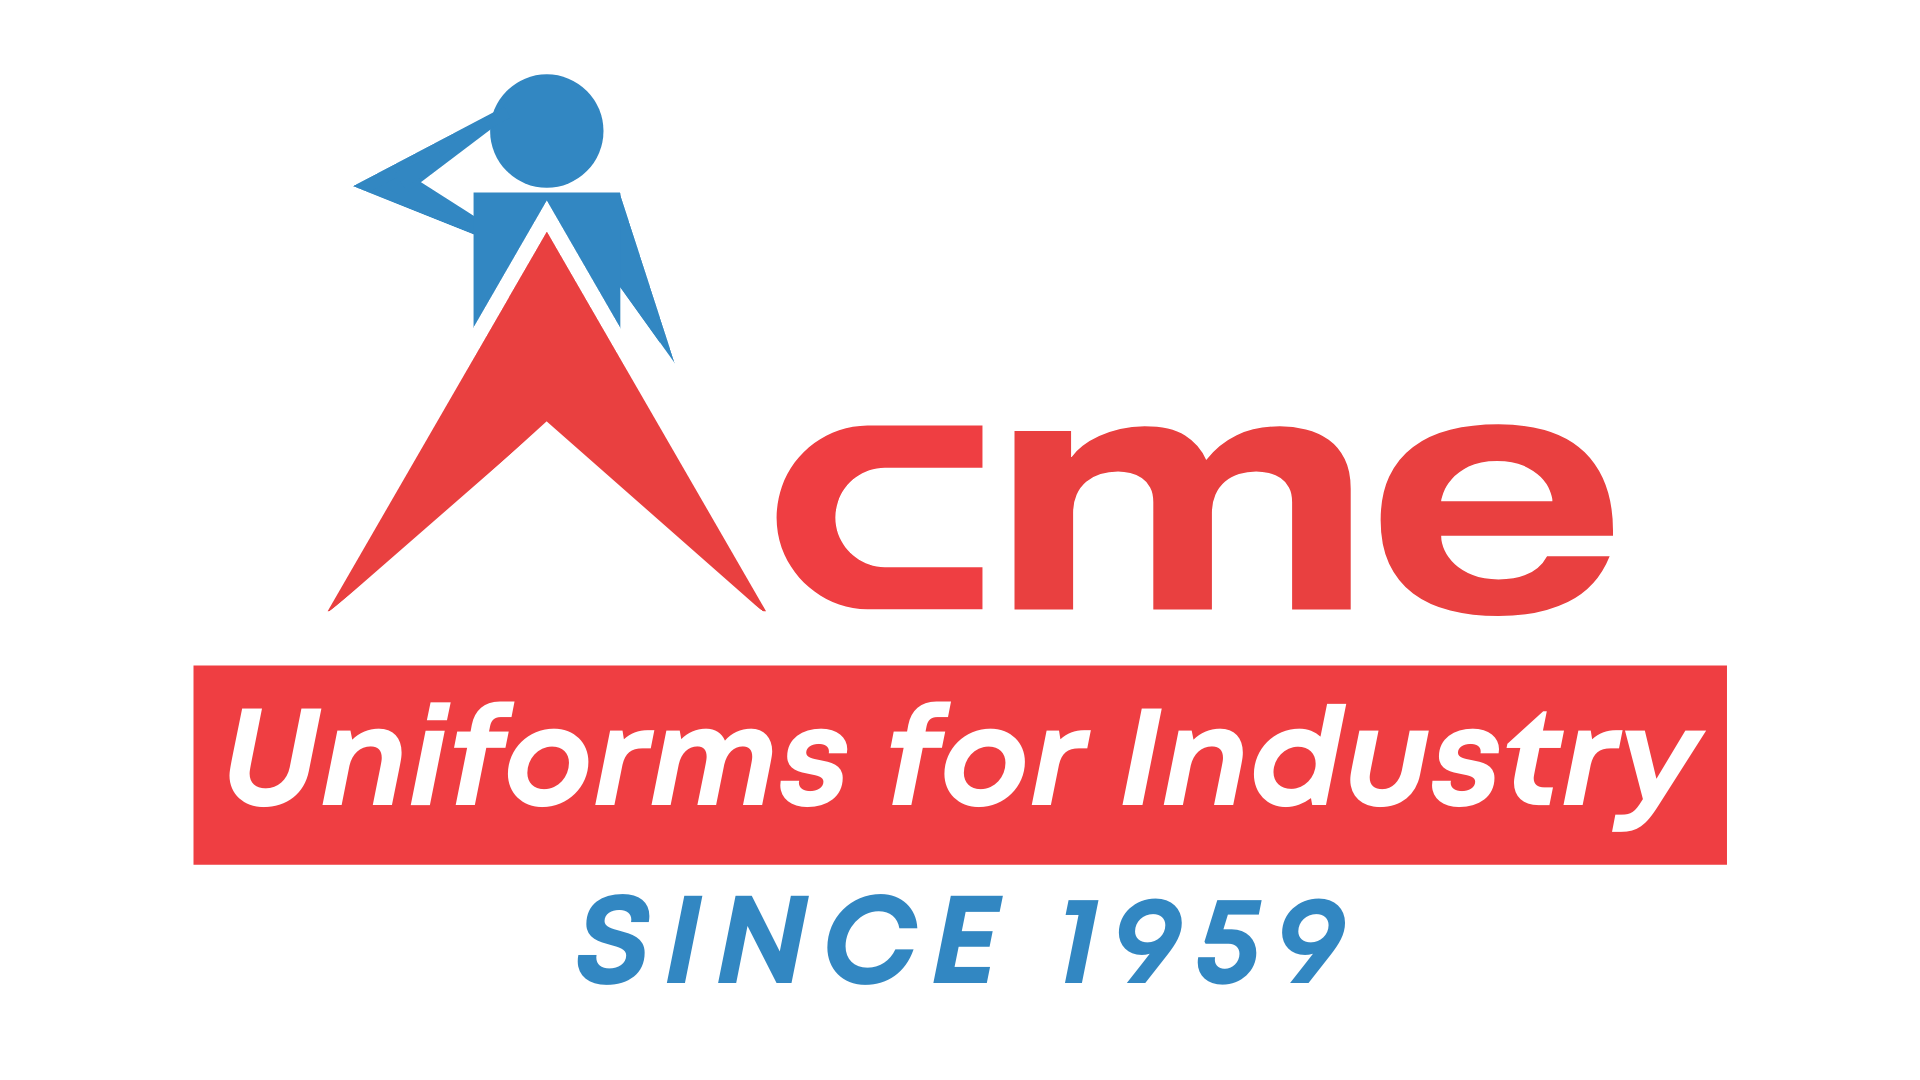 Acme Uniforms